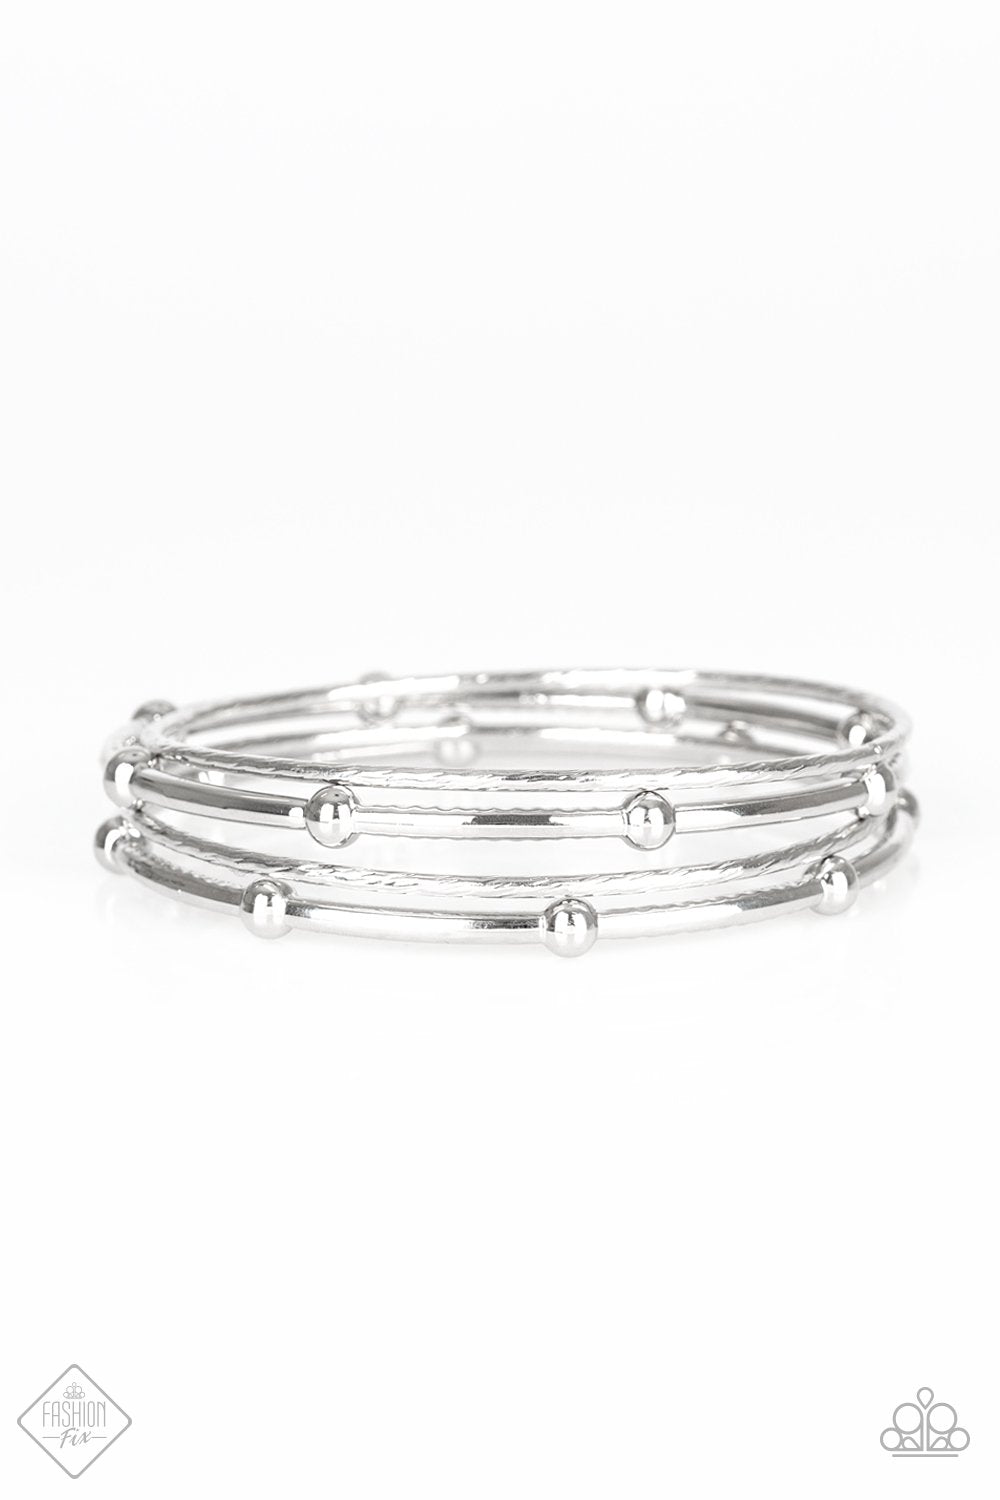 Beauty Basic Silver Bracelets - Daria's Blings N Things